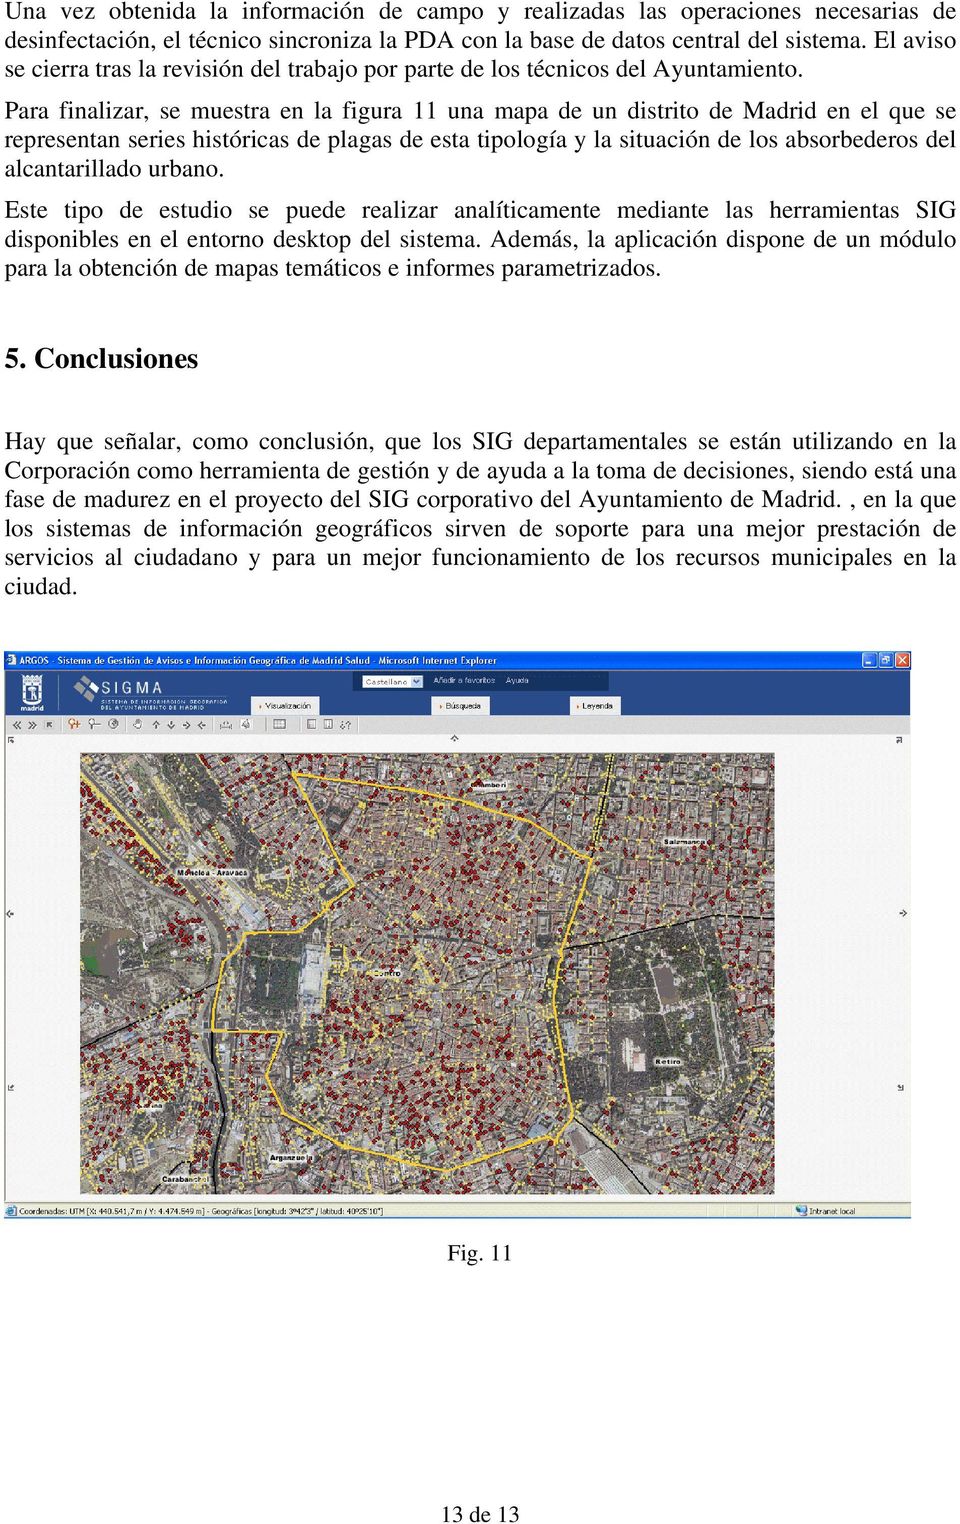 Para finalizar, se muestra en la figura 11 una mapa de un distrito de Madrid en el que se representan series históricas de plagas de esta tipología y la situación de los absorbederos del